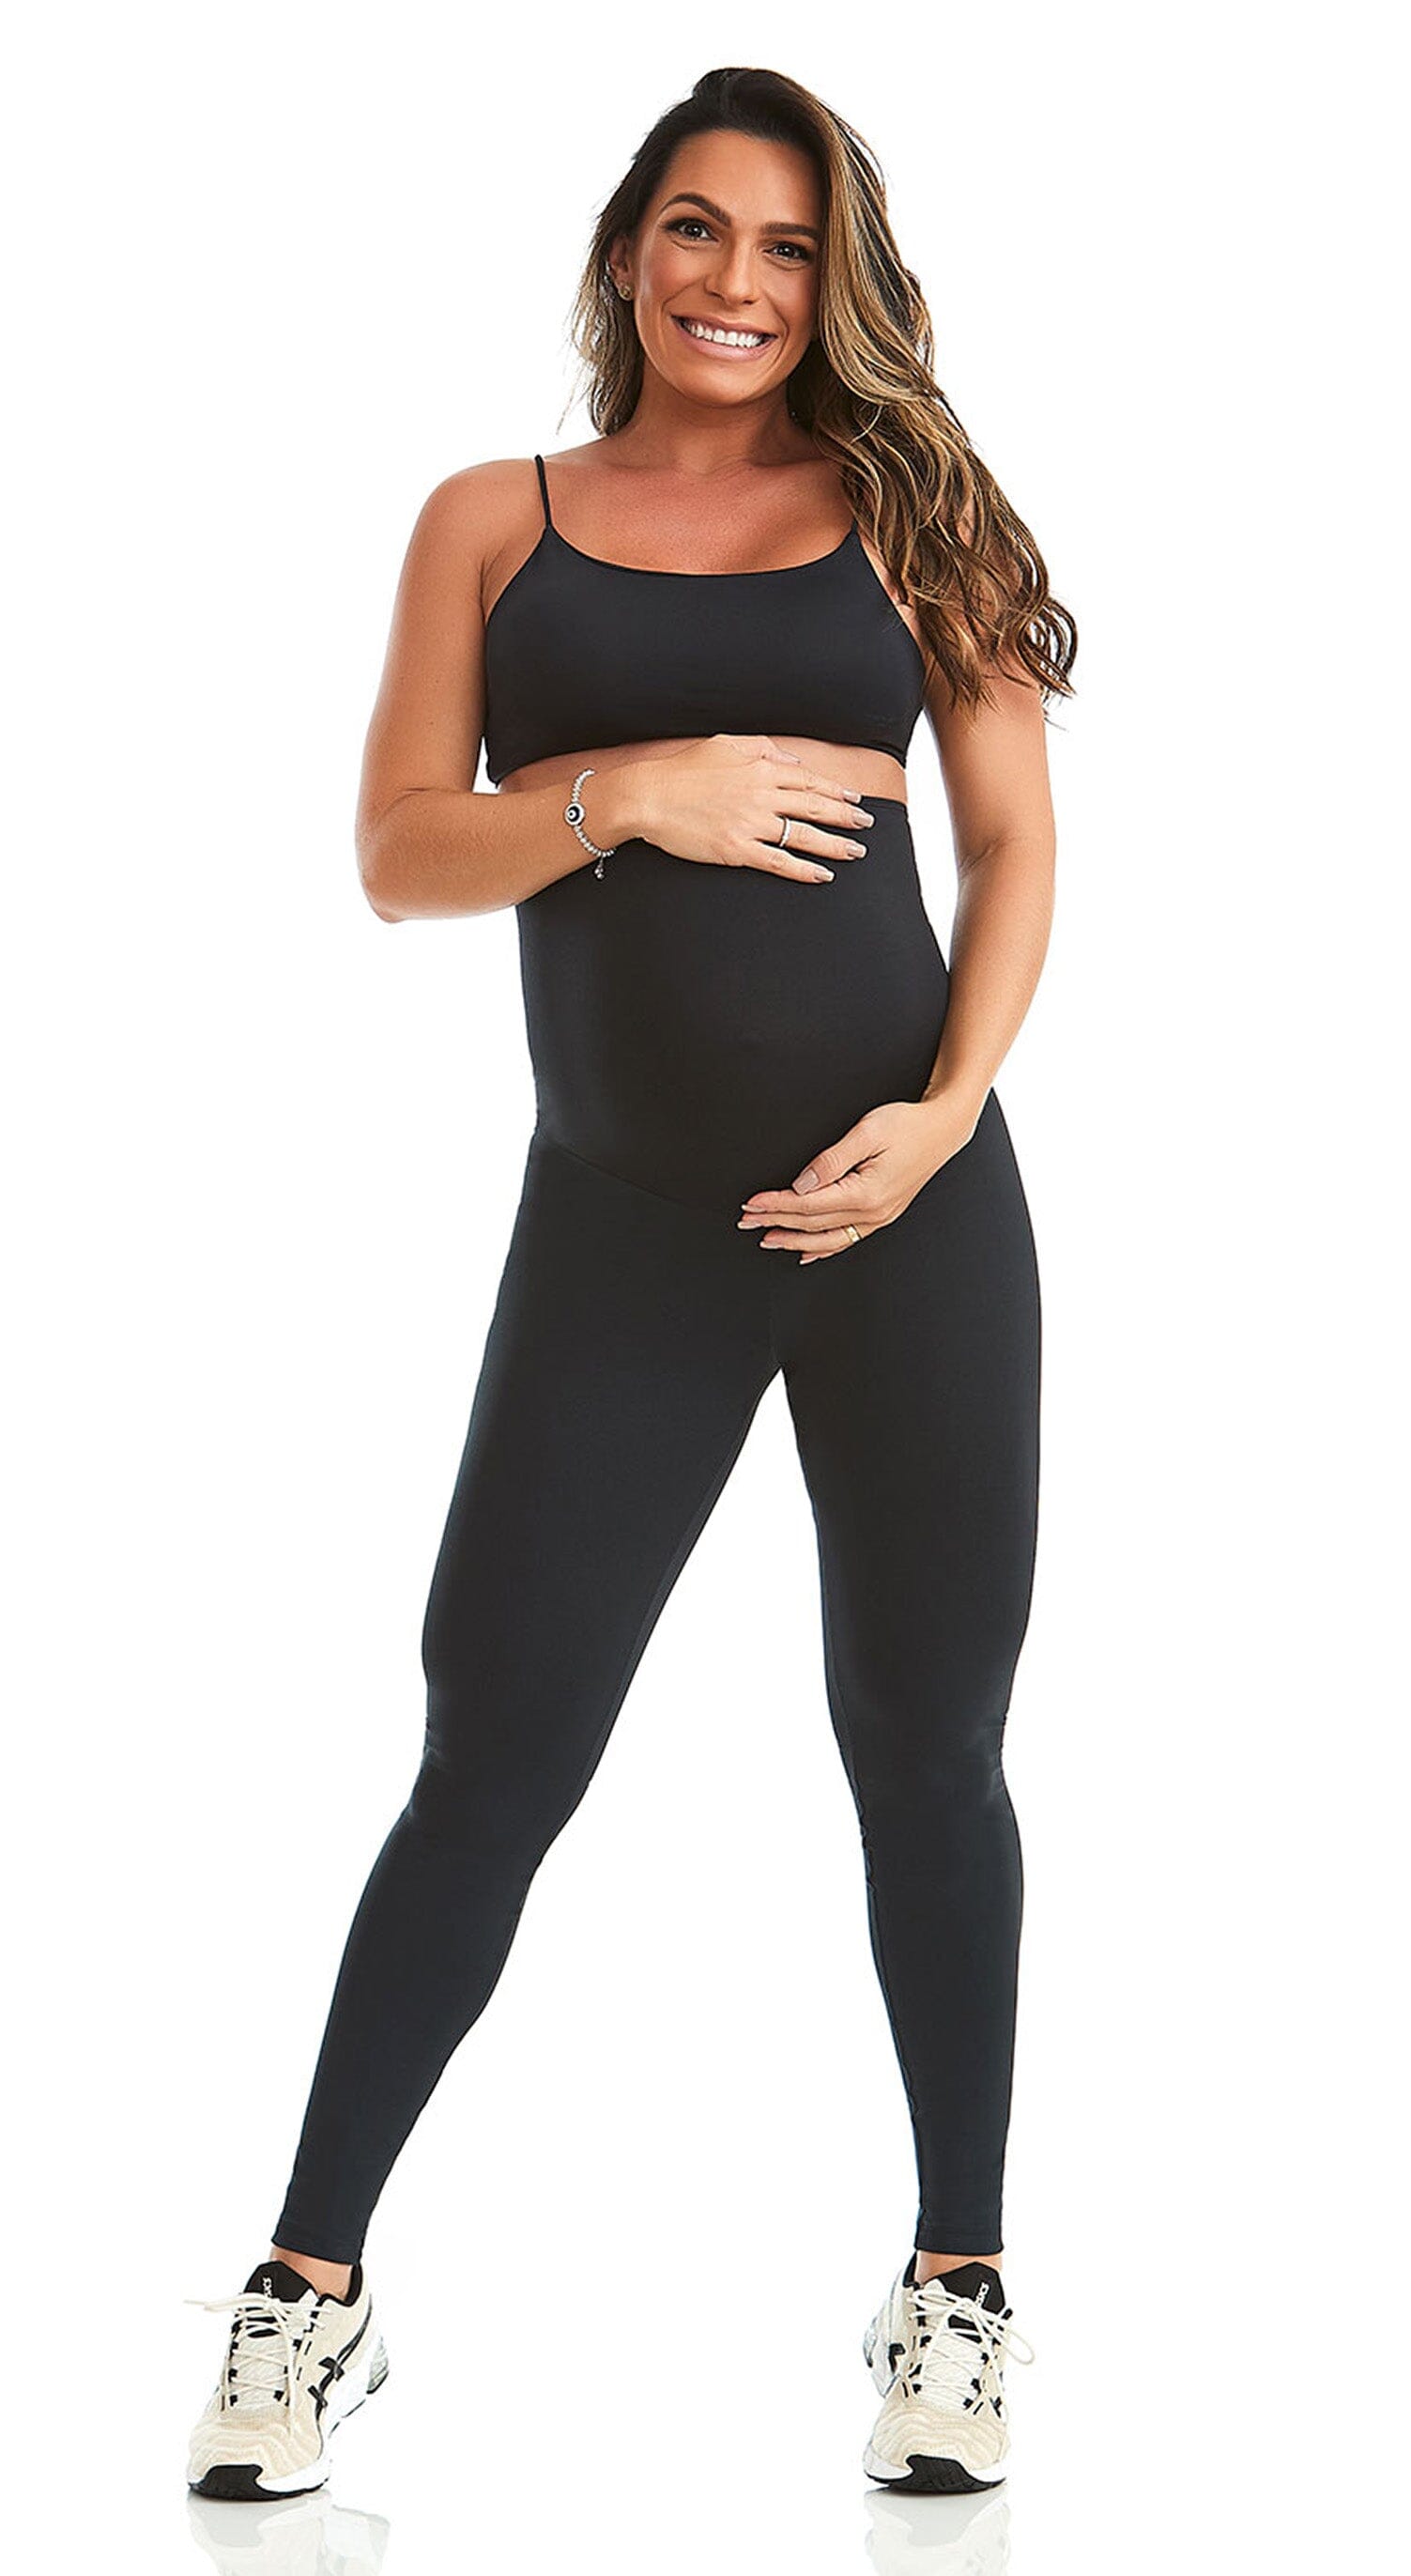 Legging Maternity - Black